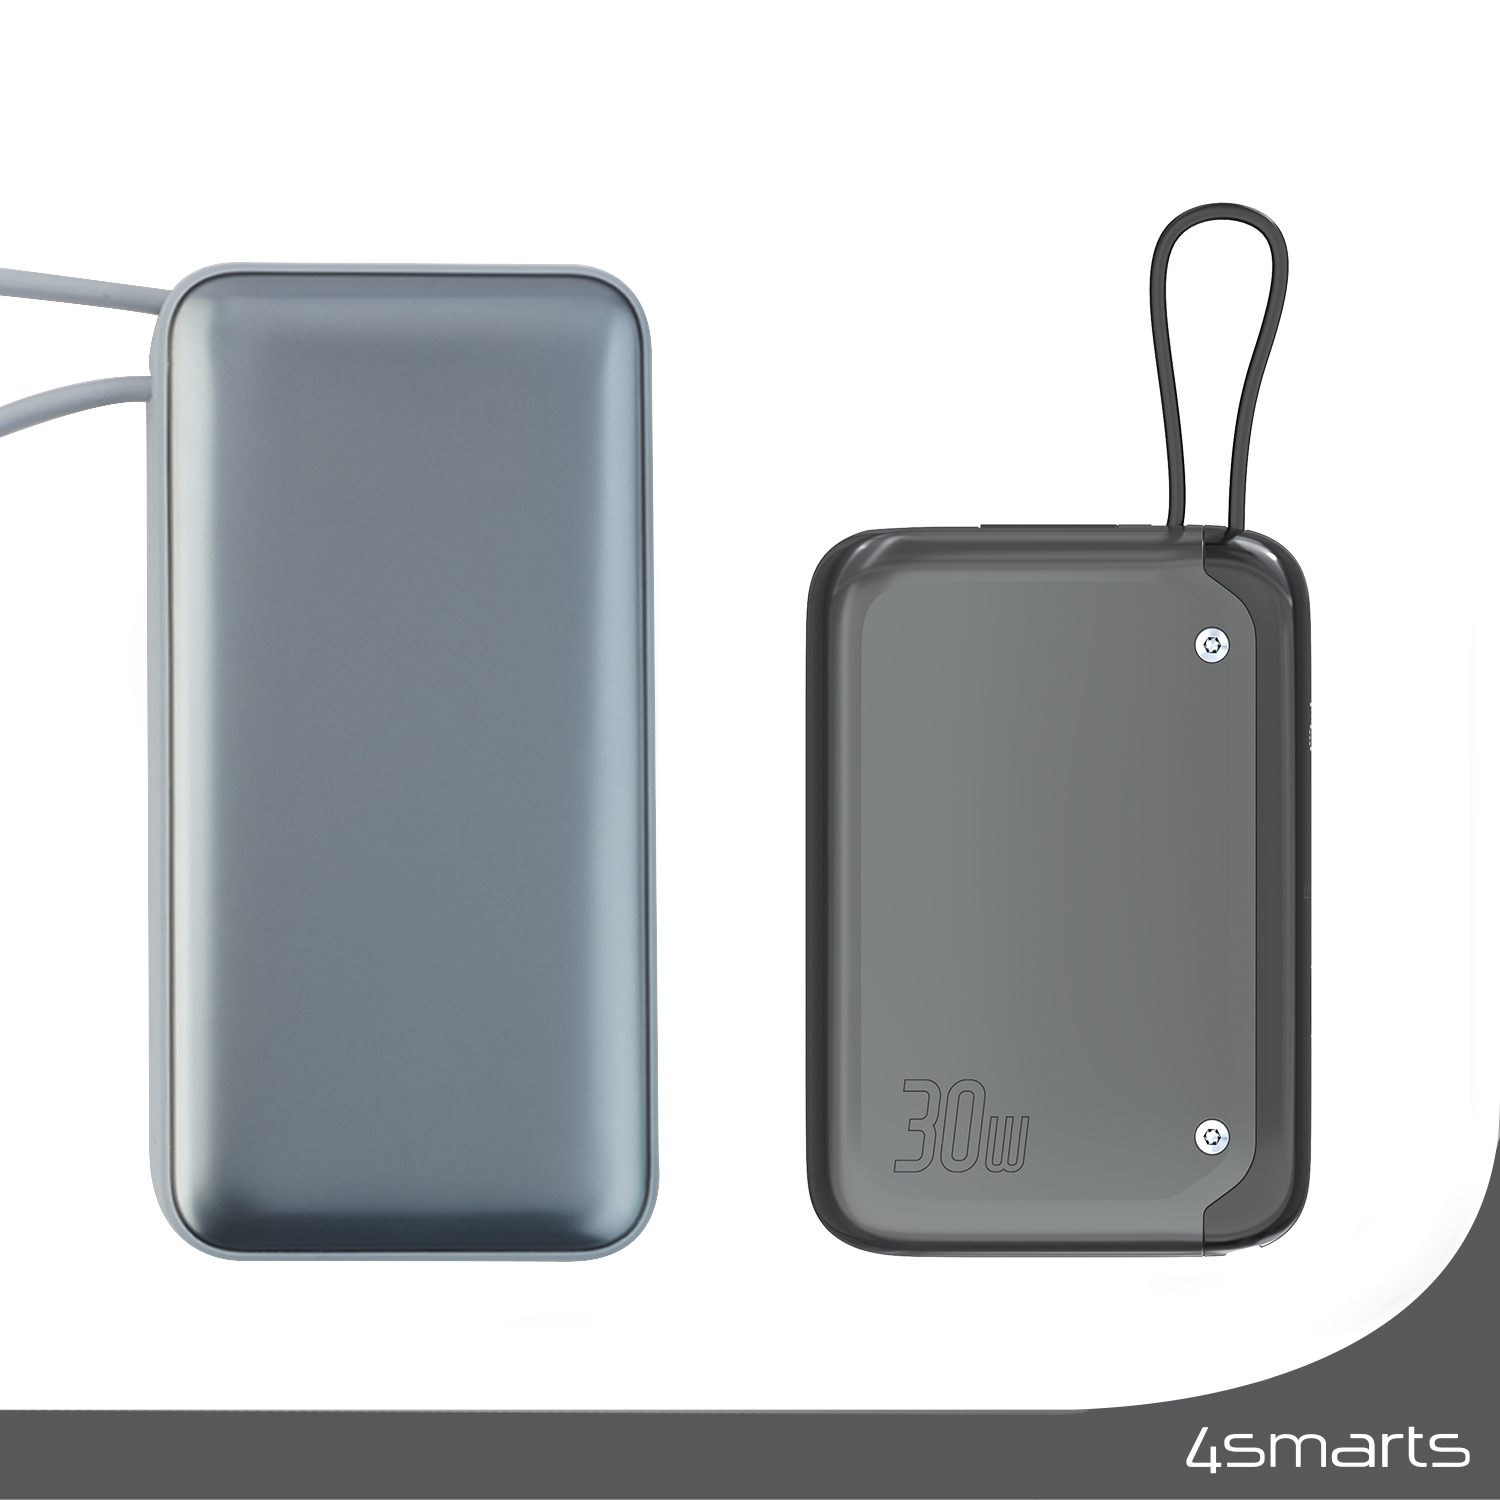 Die handliche 4smarts Powerbank Pocket verfügt über eine Kapazität von 10.000mAh und ermöglicht das schnelle Aufladen deiner Geräte mit 30 Watt.